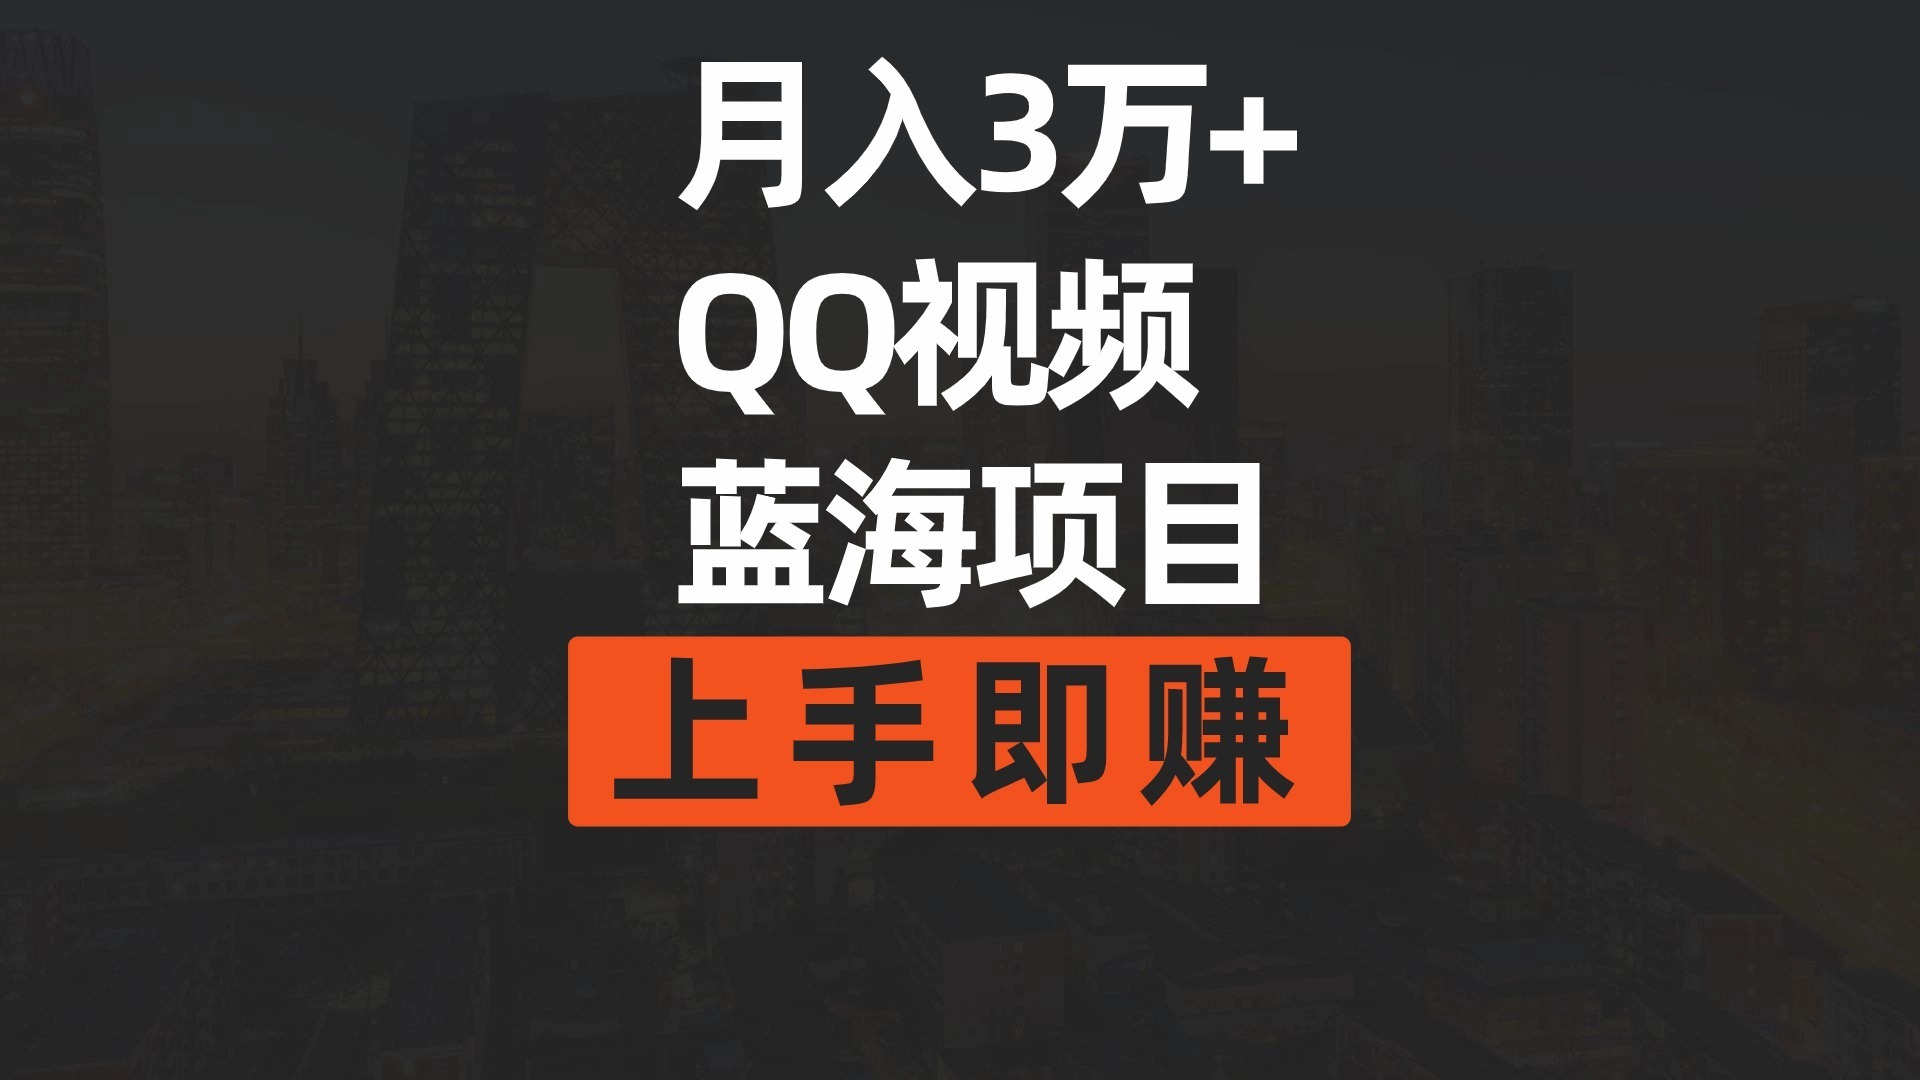 （9503期）月入3万+ 简单搬运去重QQ视频蓝海赛道：开启视频内容创新的新篇章  入门即赚